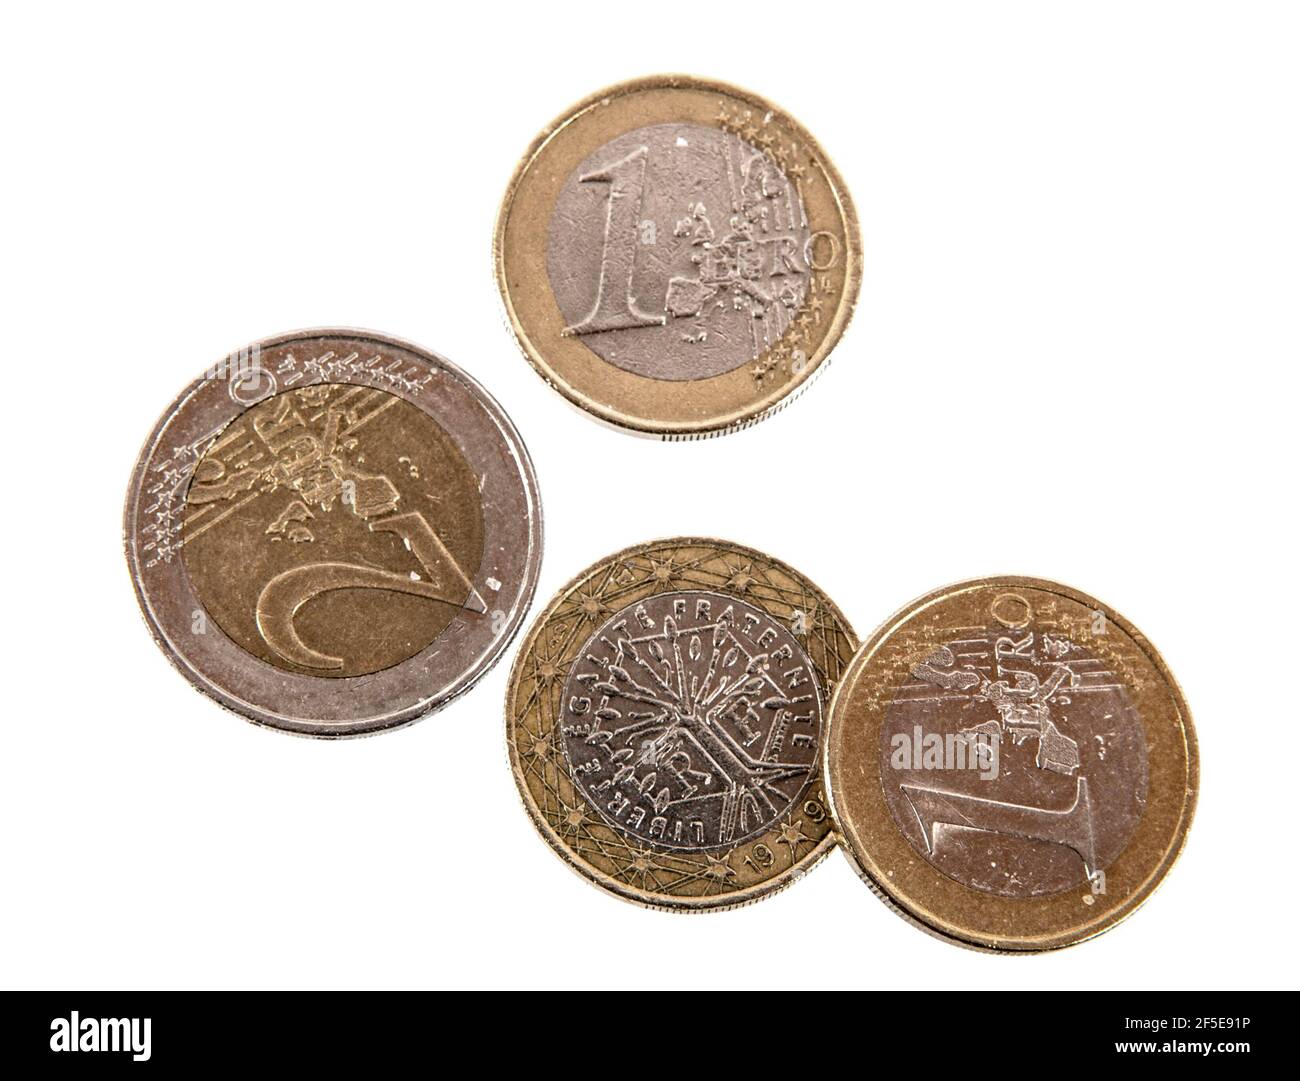 Europäische Euro-Münzen aus Deutschland, Frankreich und Irland. Stock Photo